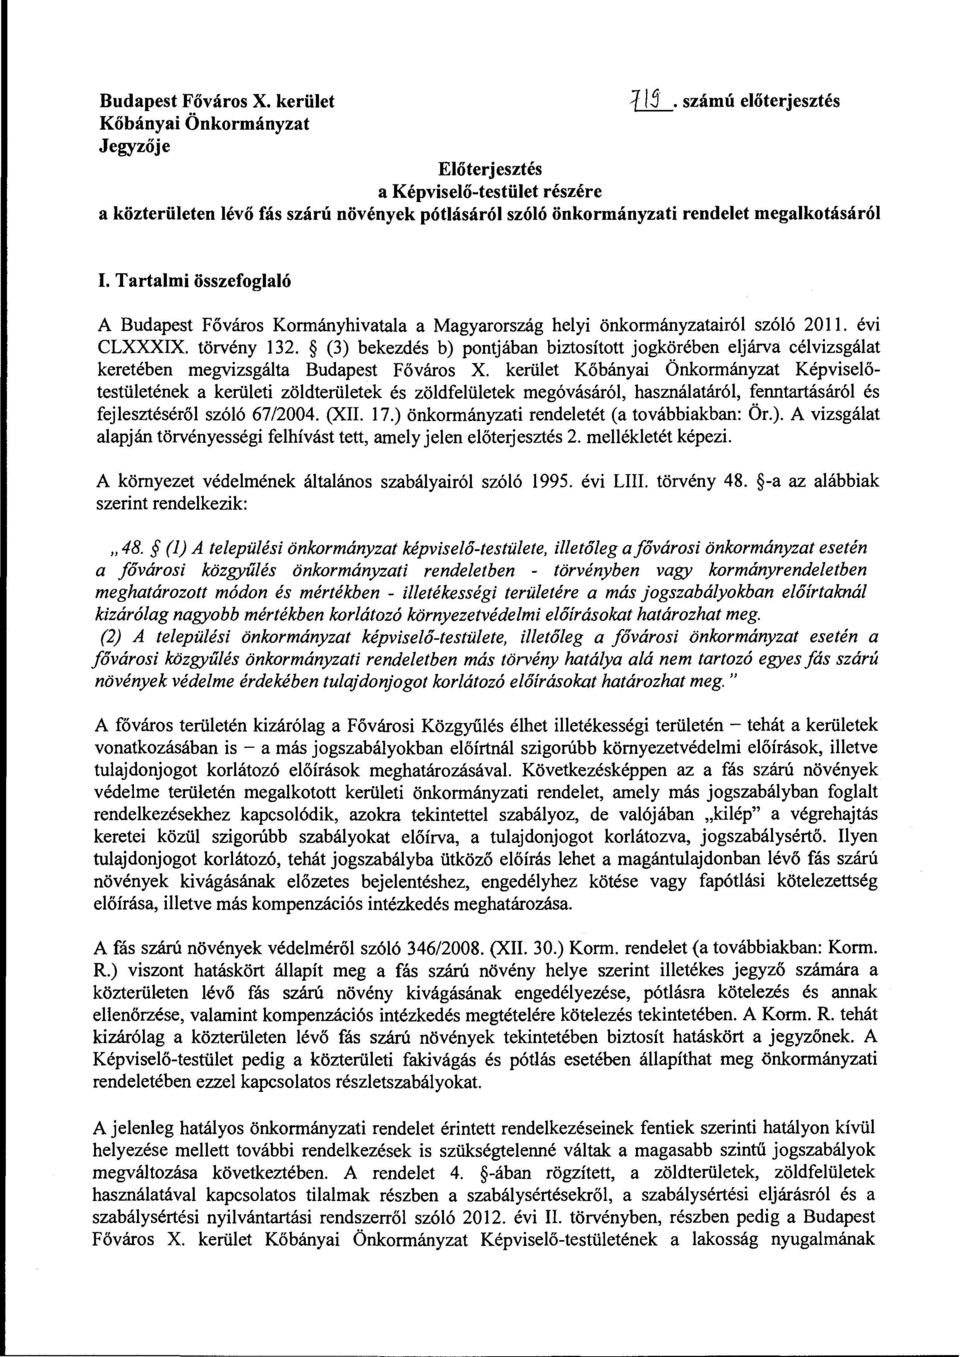 Tartalmi összefoglaló A Budapest Főváros Kormányhivatala a Magyarország helyi önkormányzatairól szóló 2011. ev1 CLXXXIX. törvény 132.